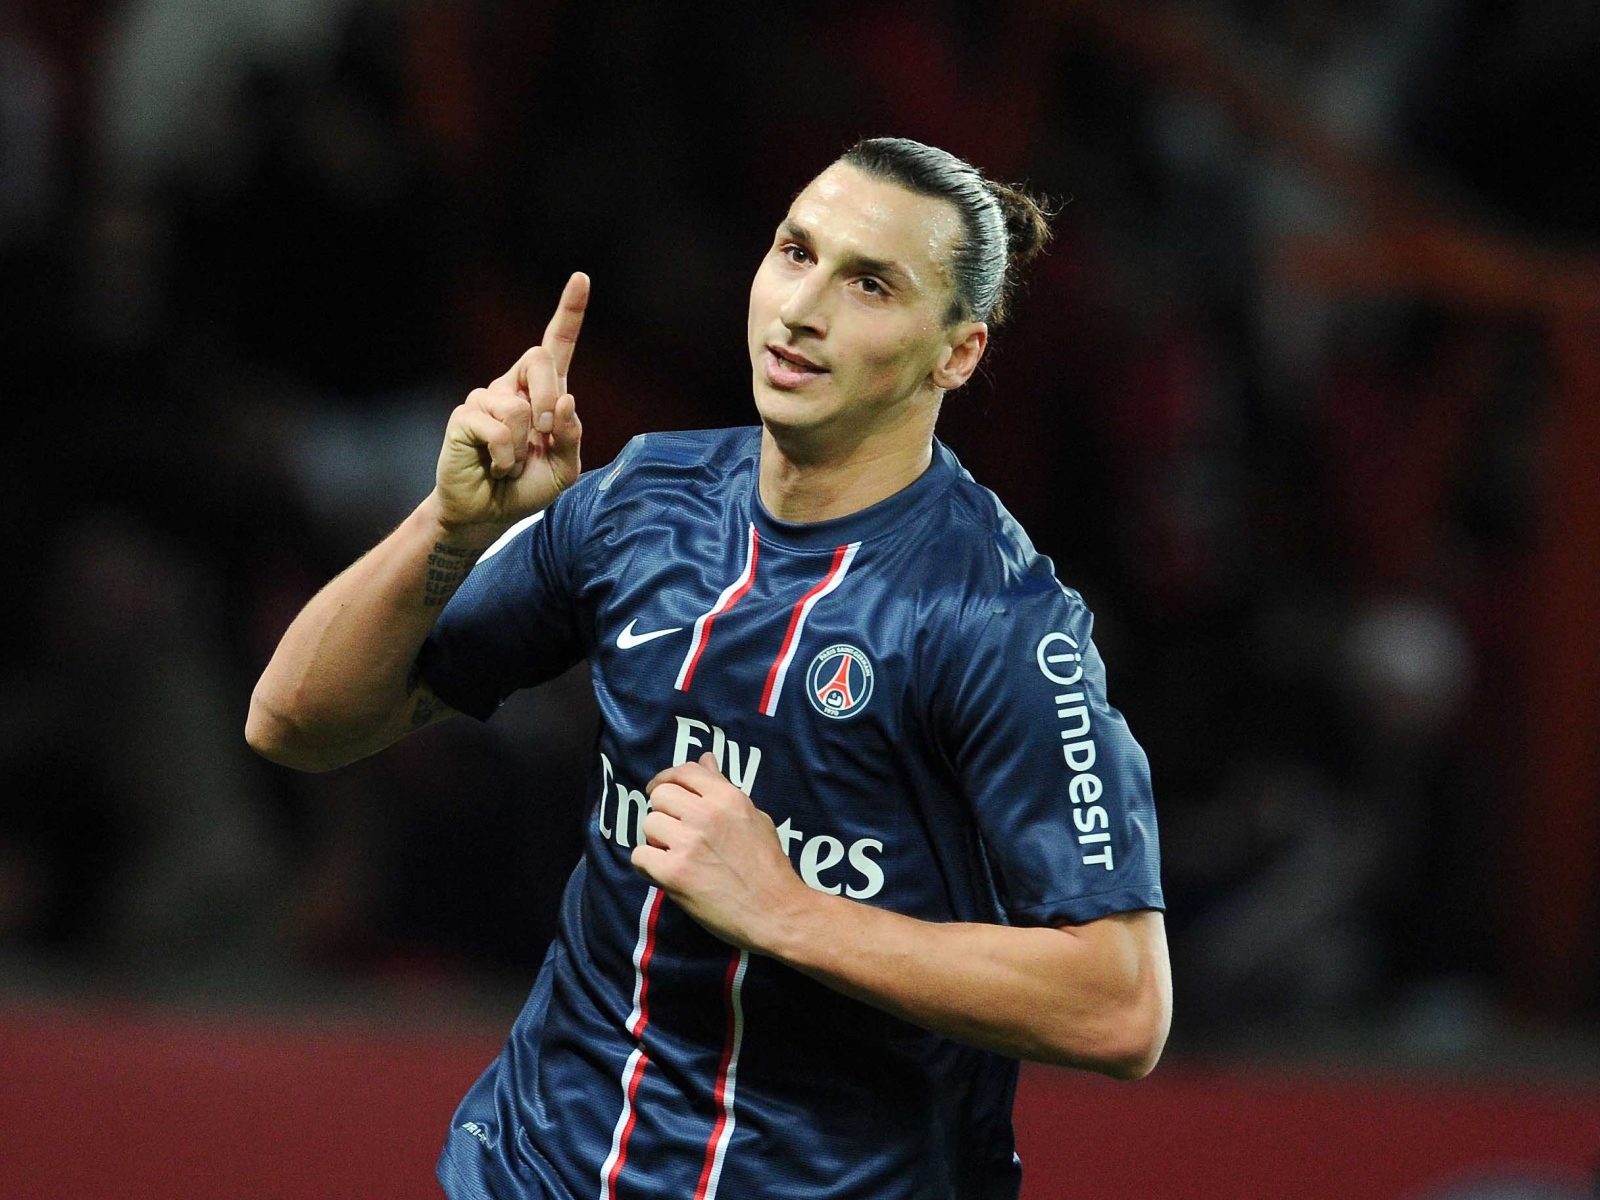 The player of PSG Zlatan Ibrahimovic